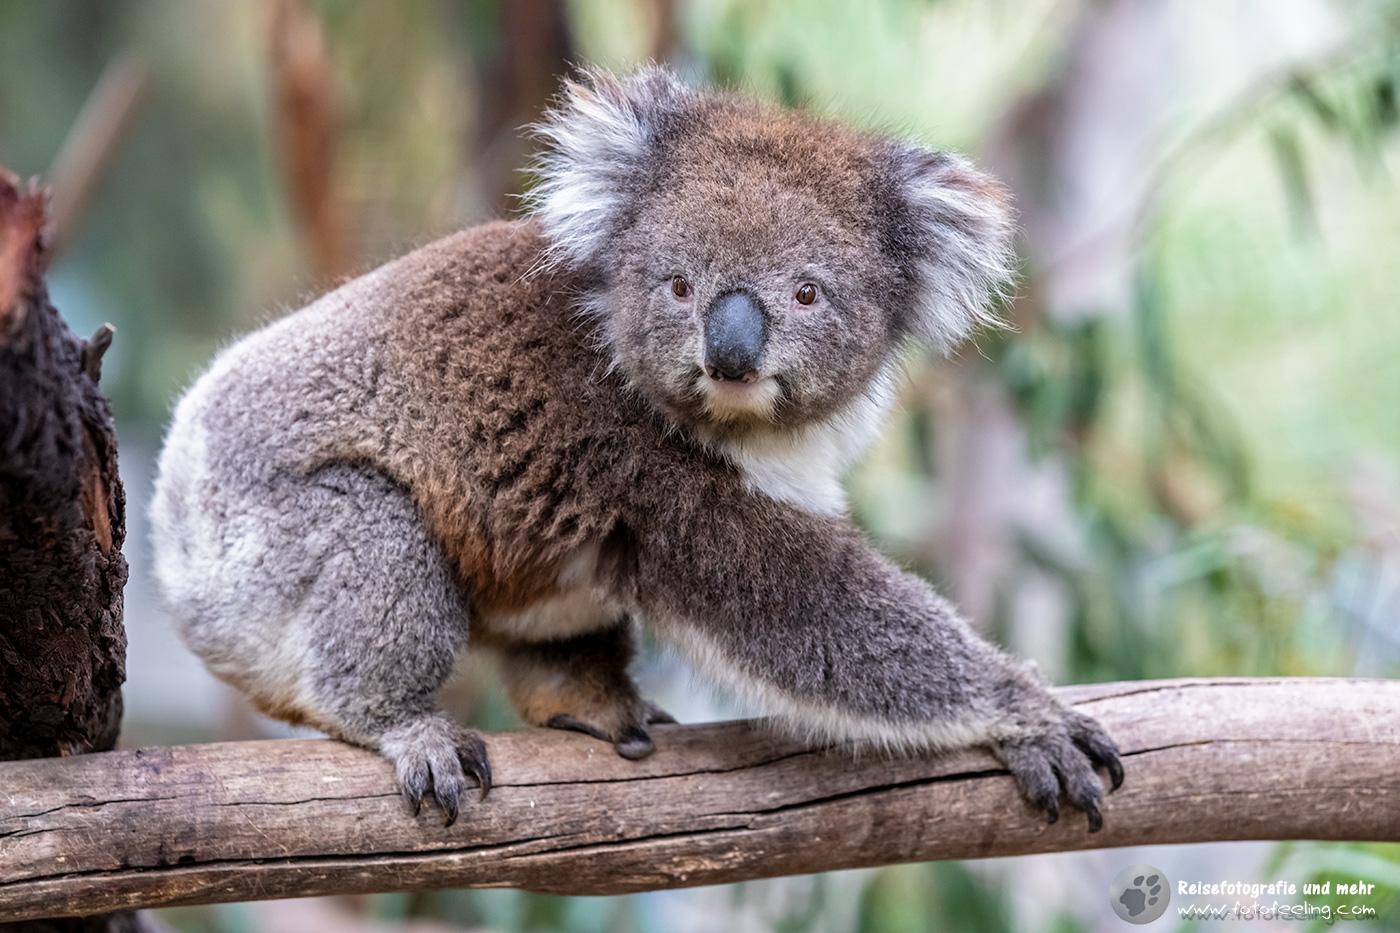 Koala (Phascolarctos cinereus), Gorge Wildlife Park, South Australia, Australien